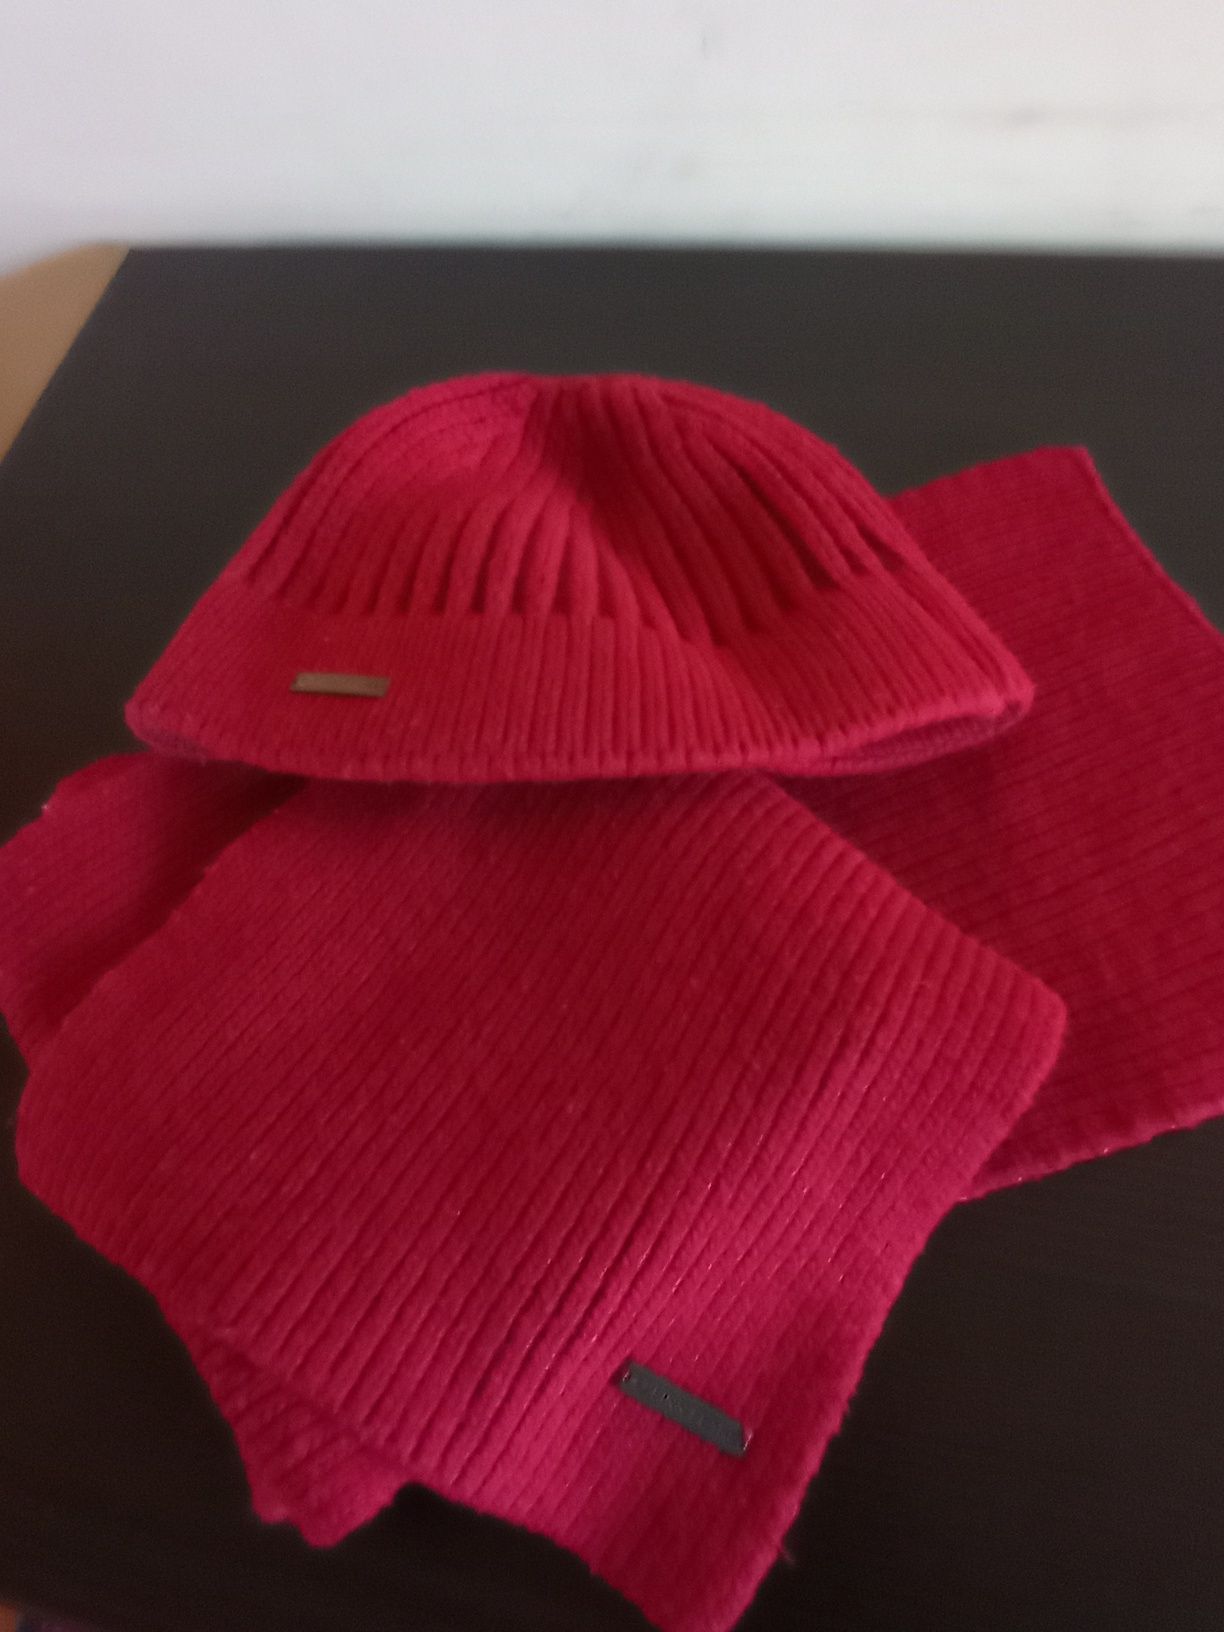 Продается недорого набор шапка и шарф производство Finflaier, очень те